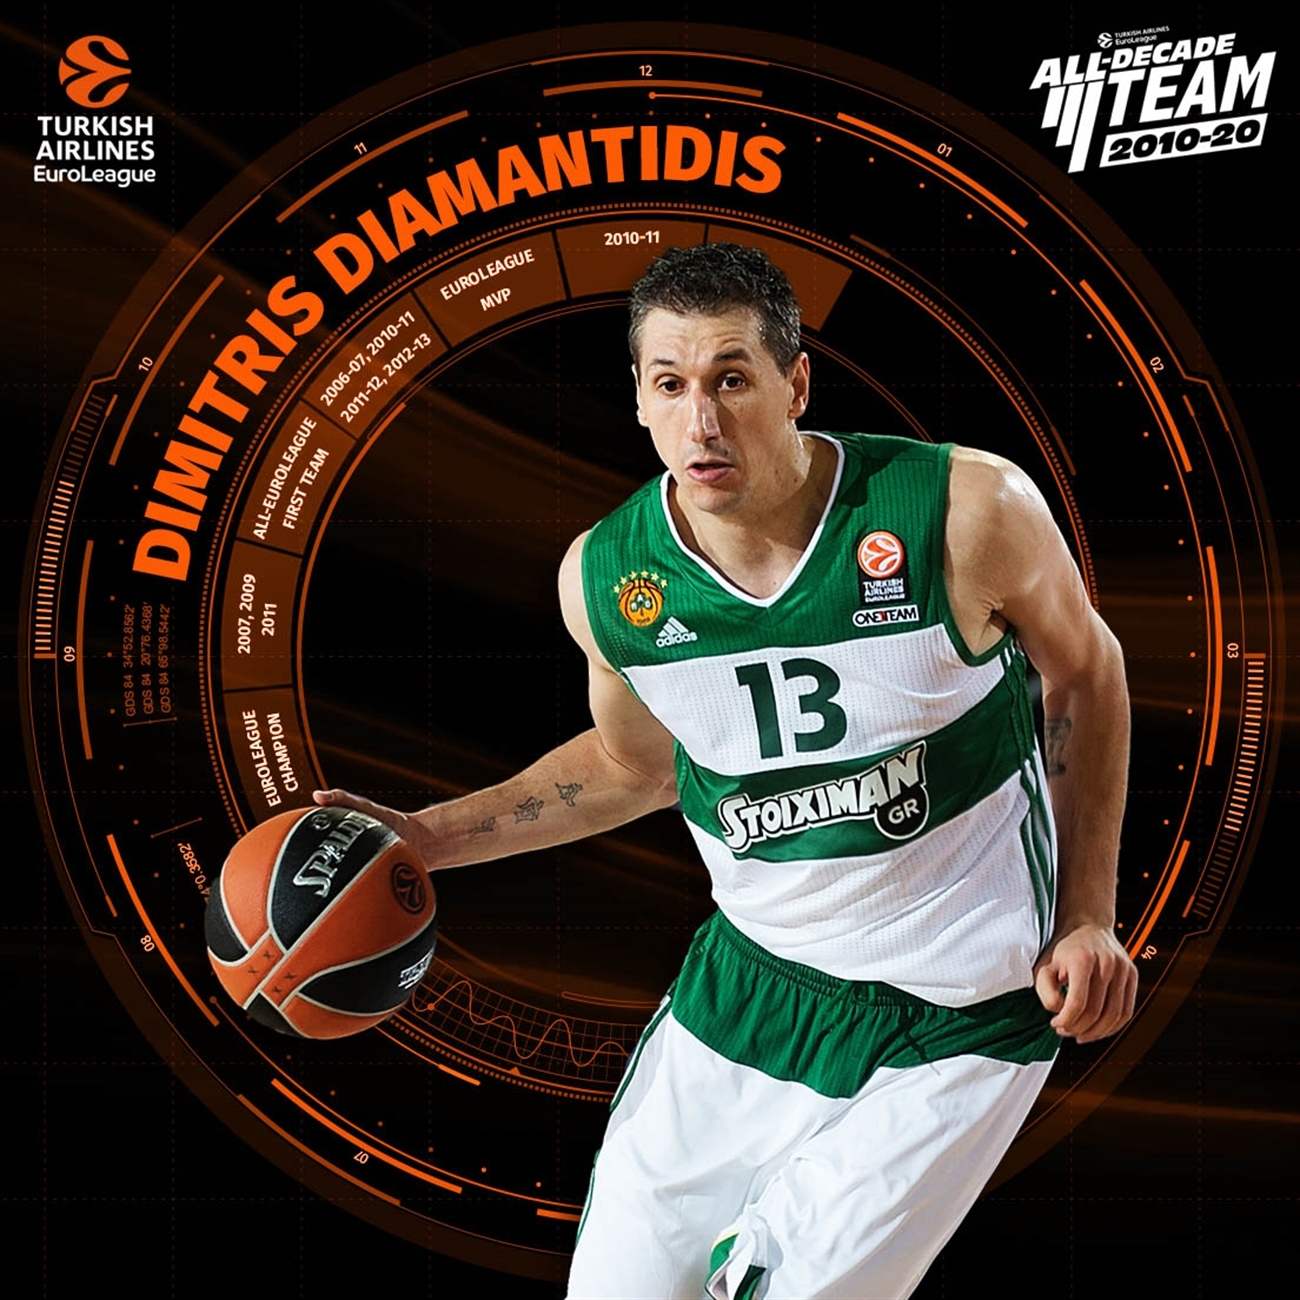 salado Ya Malgastar Dimitris Diamantidis, en el equipo ideal de la década 2010-20 en la  EuroLeague - Piratasdelbasket